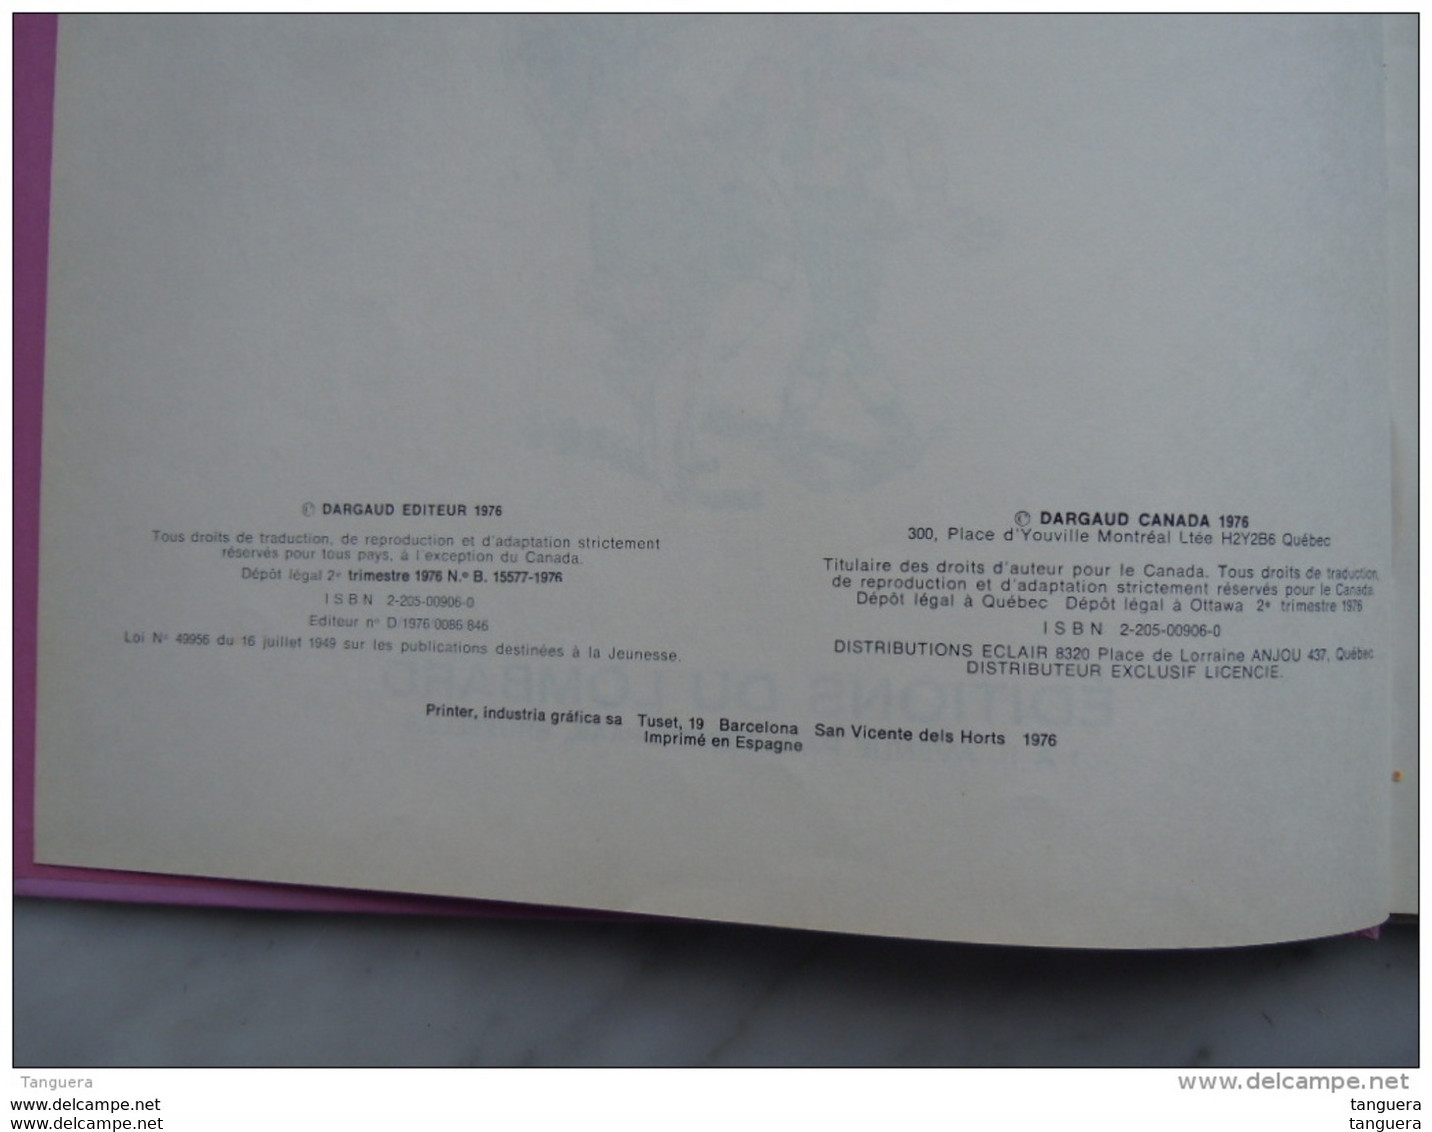 Lucky Luke L'Empéreur Smith 1er édition Dargaud Dépot légal 2e trim. 1976 ISBN 2-205-00906-0 Tres bon état hard cover